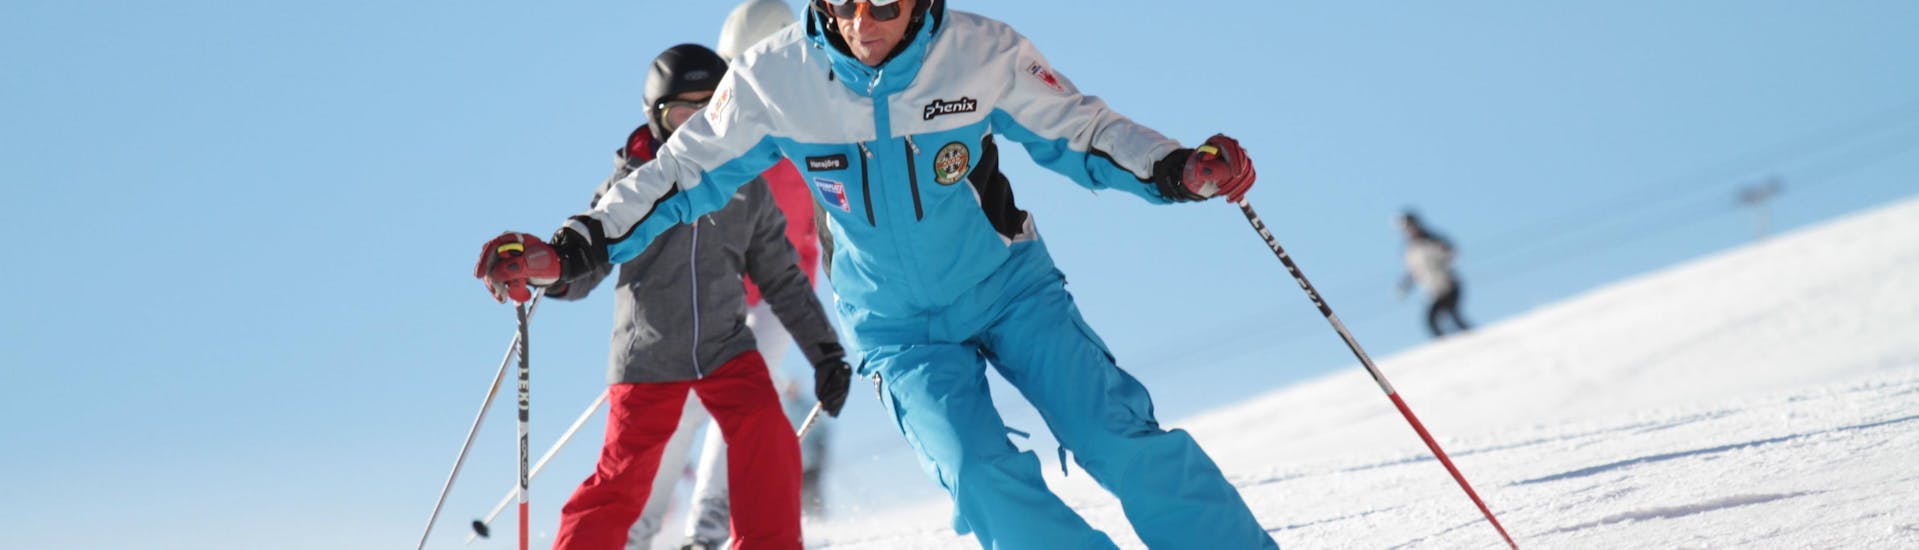 Private Skikurse für Erwachsene für alle Levels.